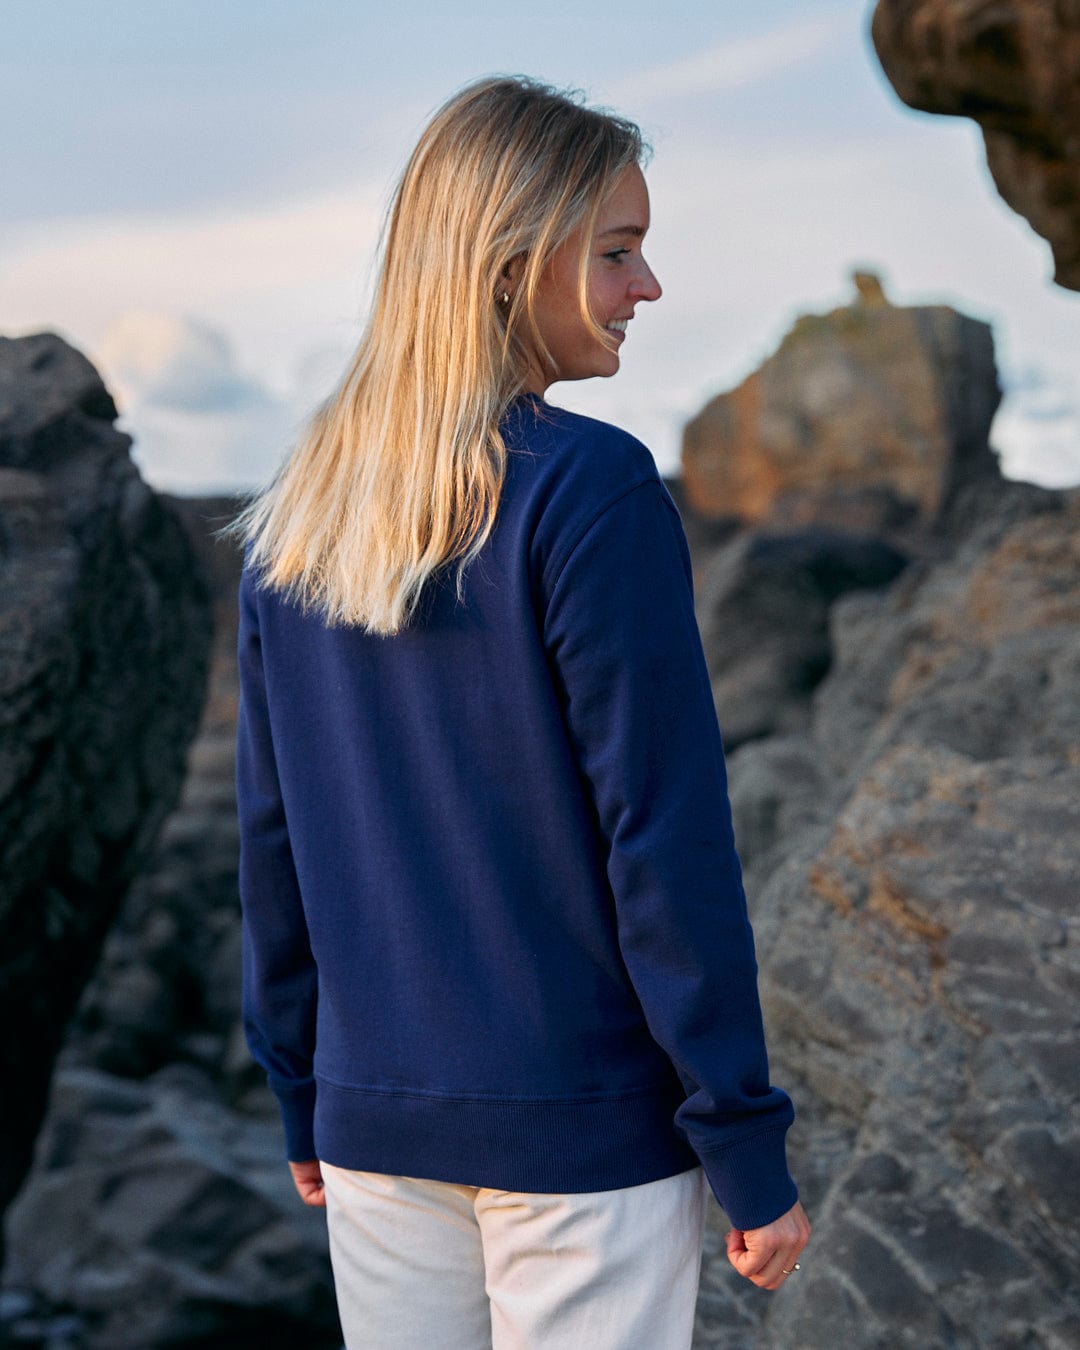 A woman wearing a Retro Ribbon - Womens Sweat - Blue sweatshirt standing on Saltrock branded rocks.